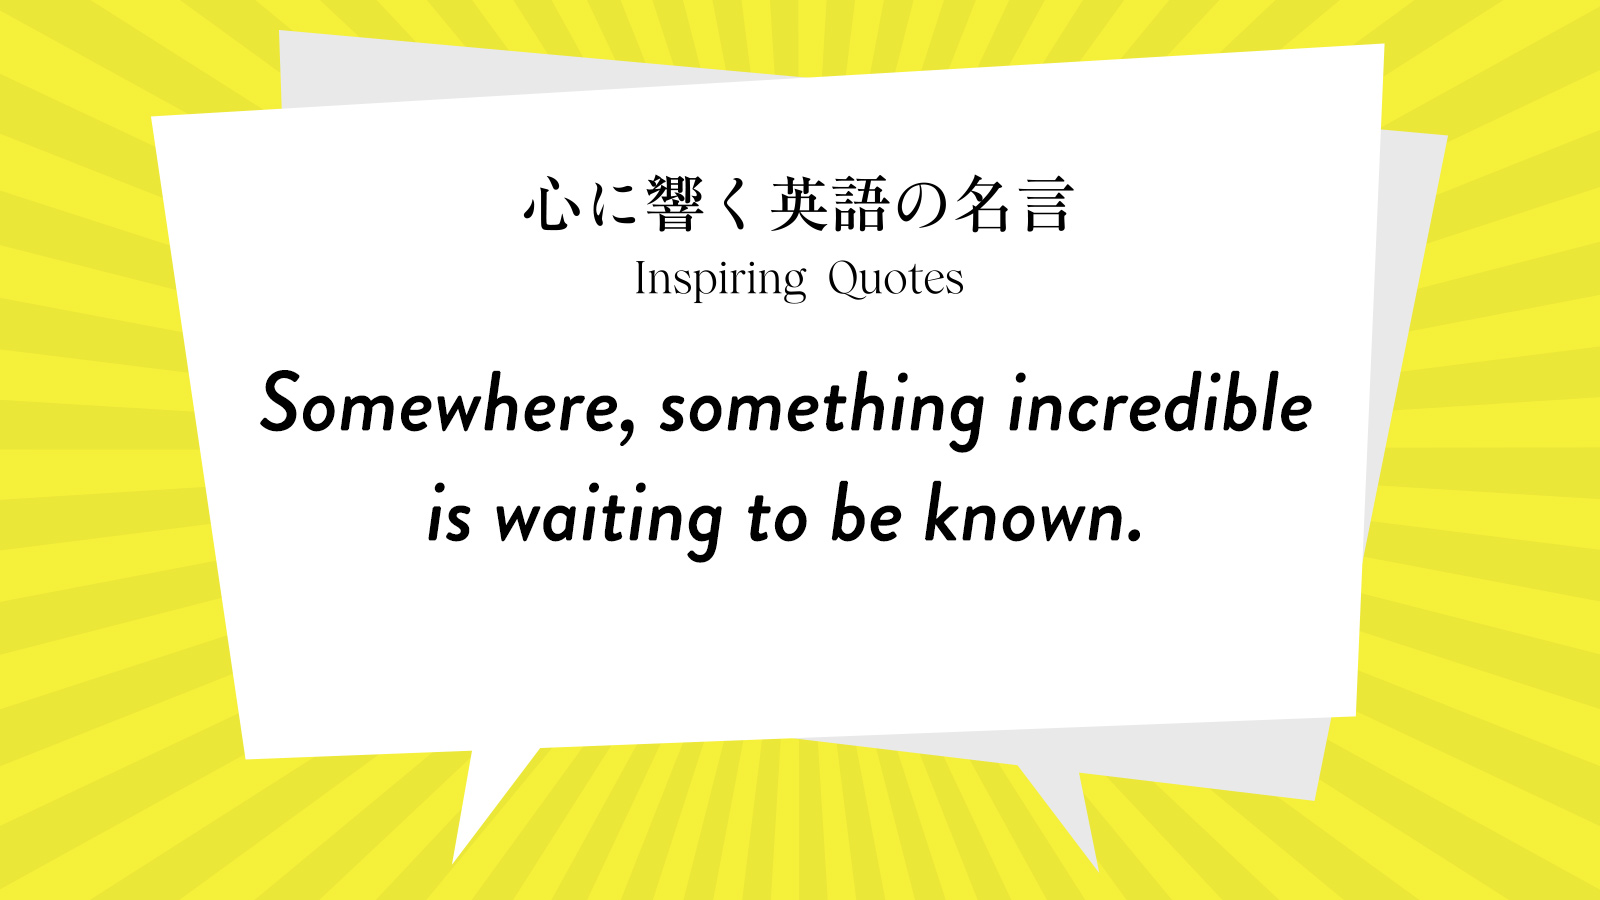 今週の名言 “Somewhere, something incredible is waiting to be known.” | Inspiring Quotes: 心に響く英語の名言